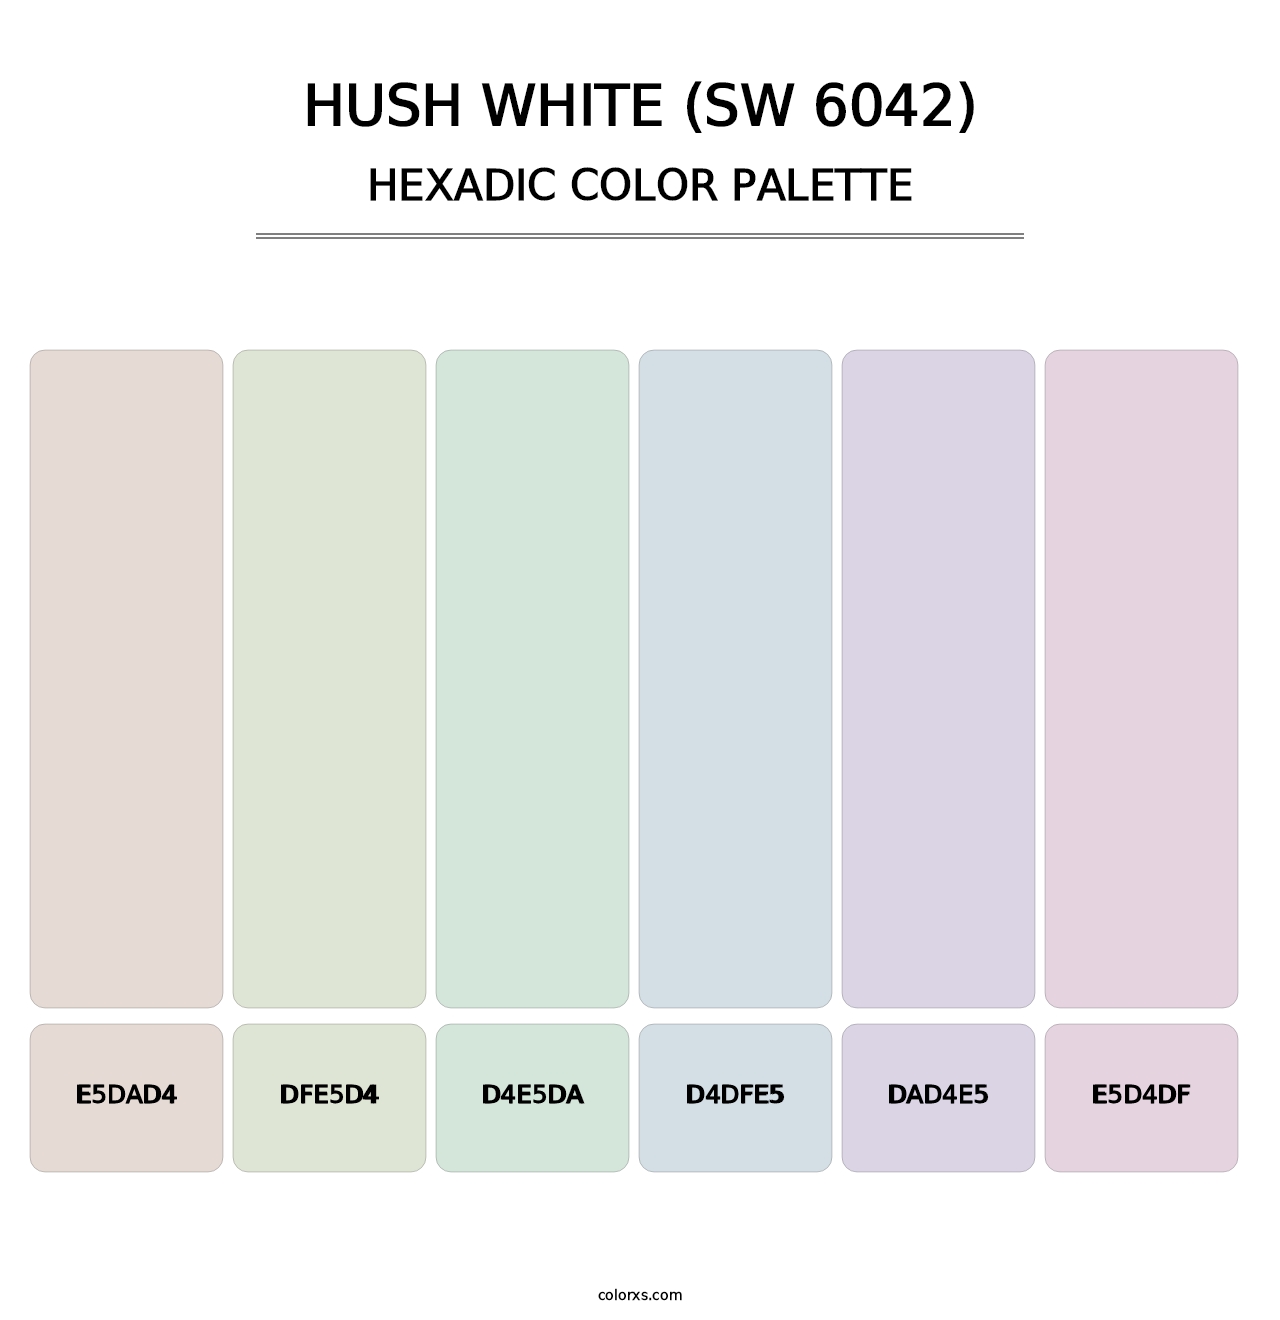 Hush White (SW 6042) - Hexadic Color Palette